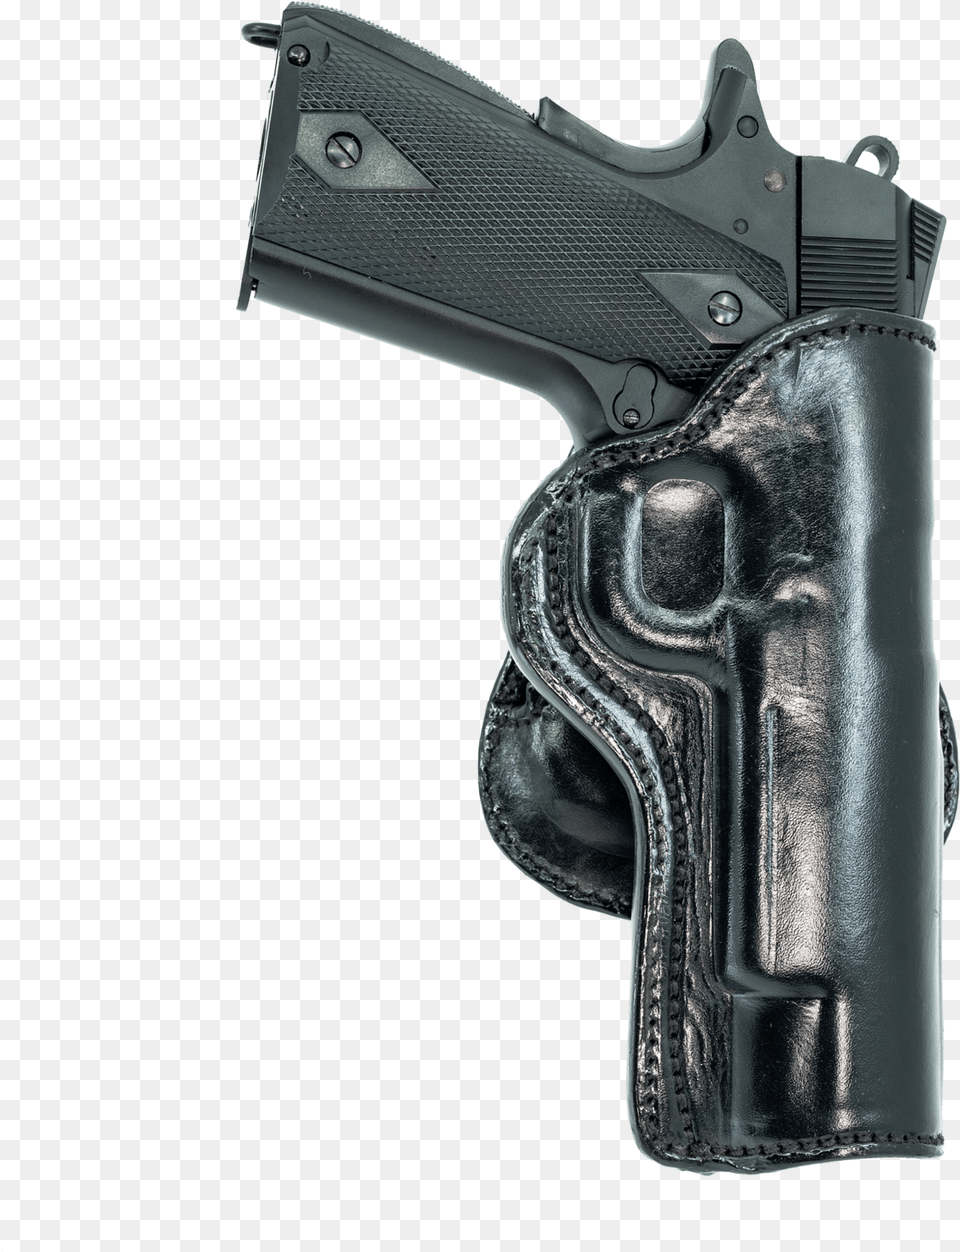 Trigger, Firearm, Gun, Handgun, Weapon Free Png